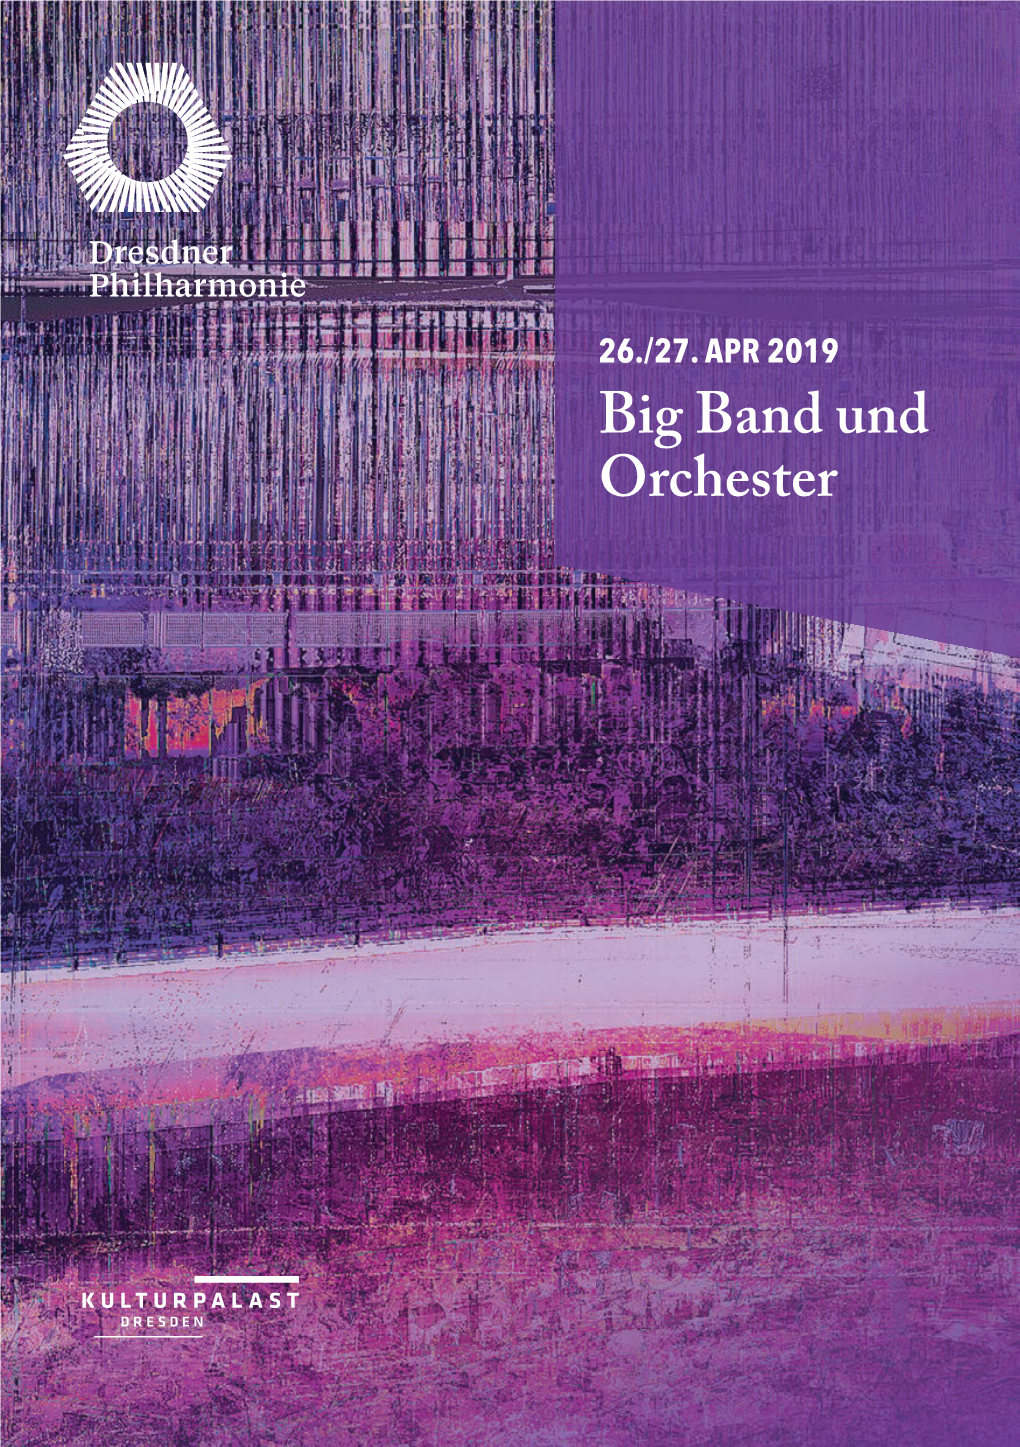 Big Band Und Orchester SAISON 19 /20 DIE NEUEN ABOS SIND DA! Marek Janowski Chefdirigent Und Künstlerischer Leiter Ab 2019 / 2020